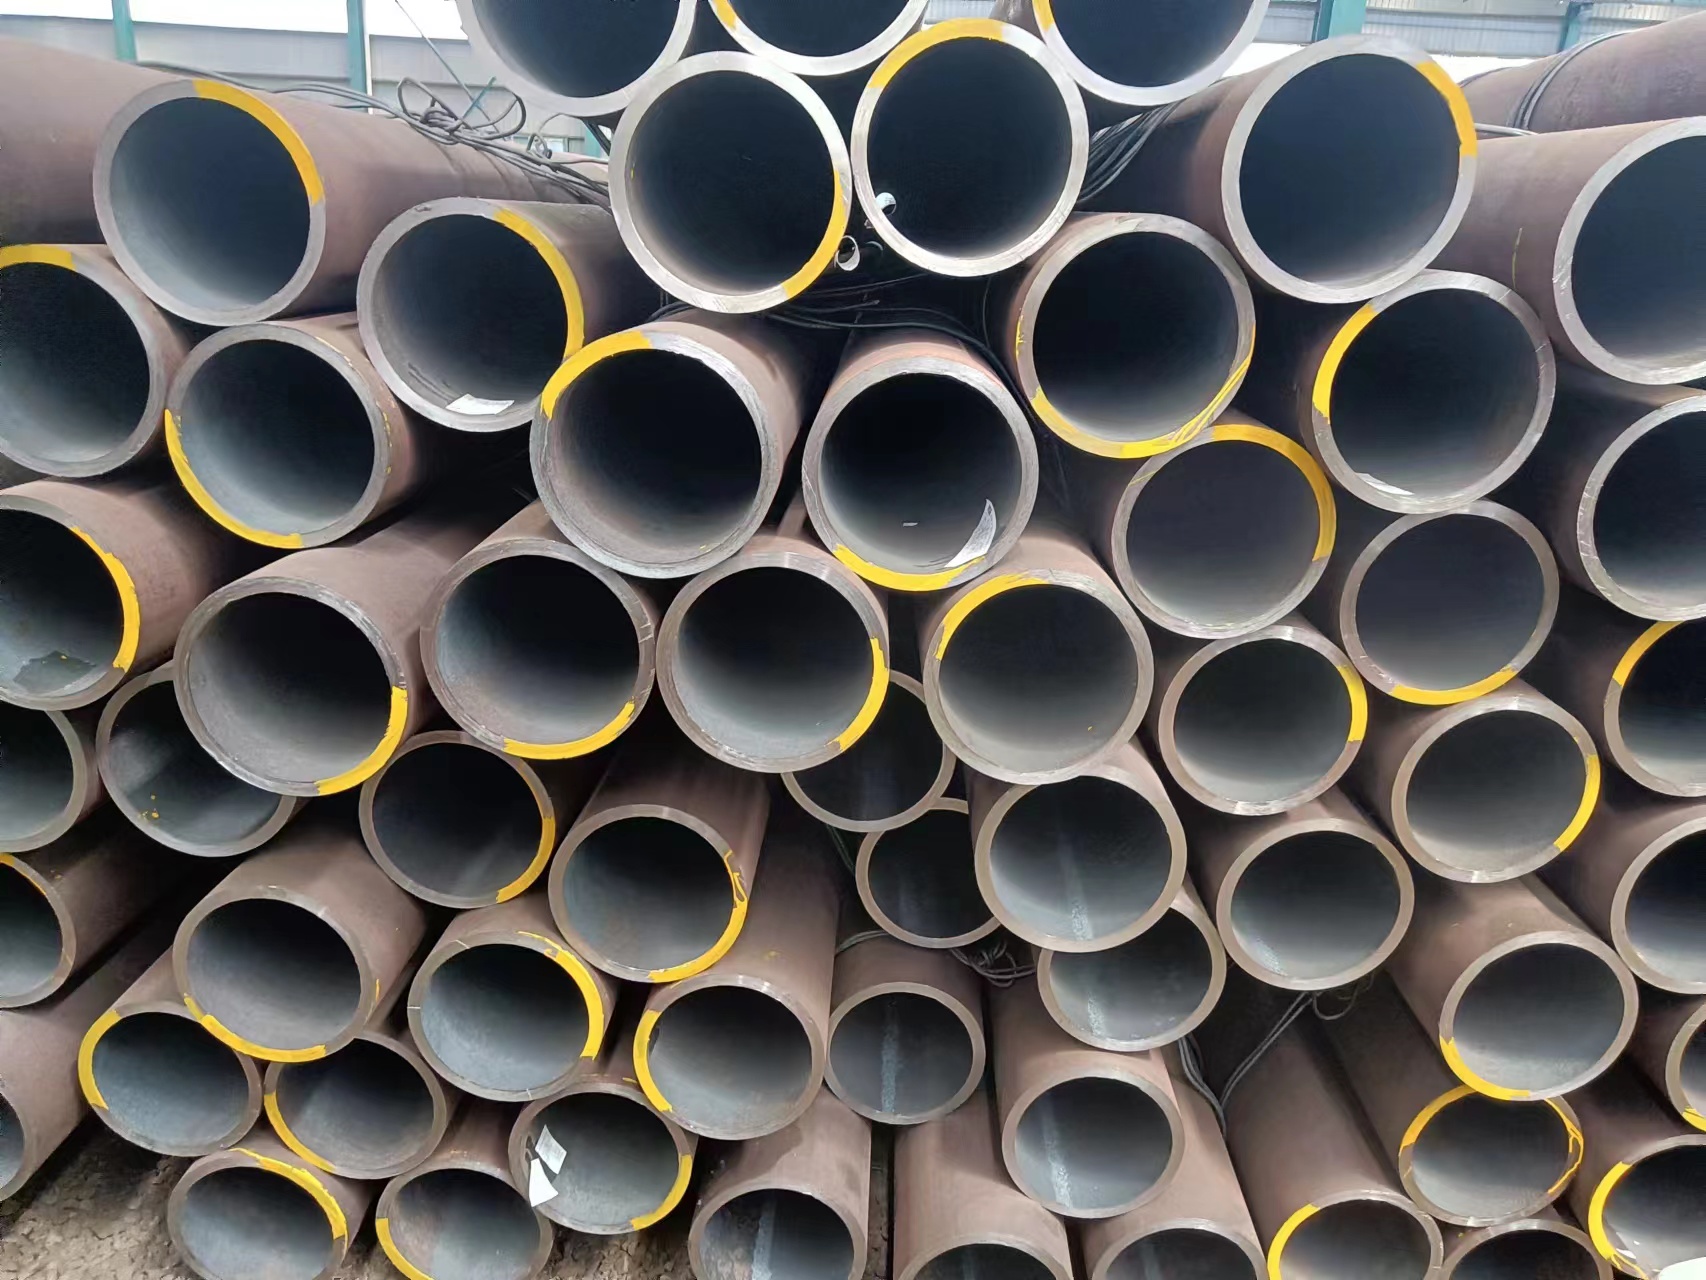 Large diameter carbon steel seamless steel pipe